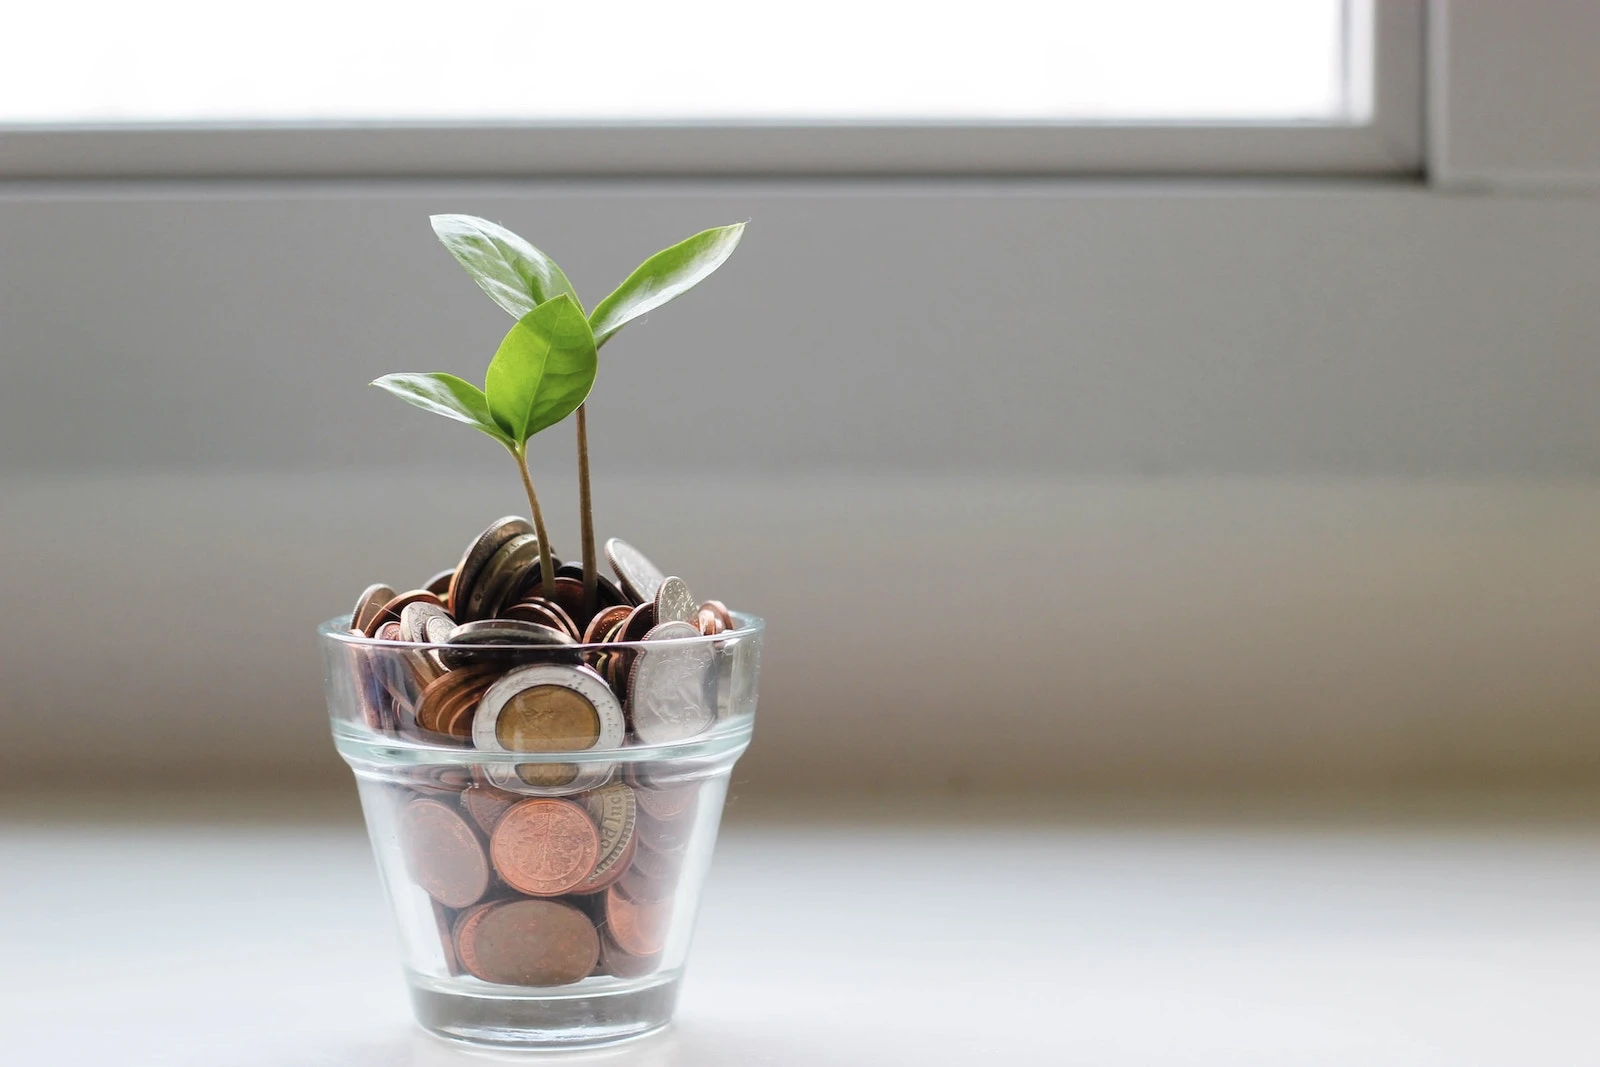 une plante qui pousse dans un verre contenant des pièces de monnaie